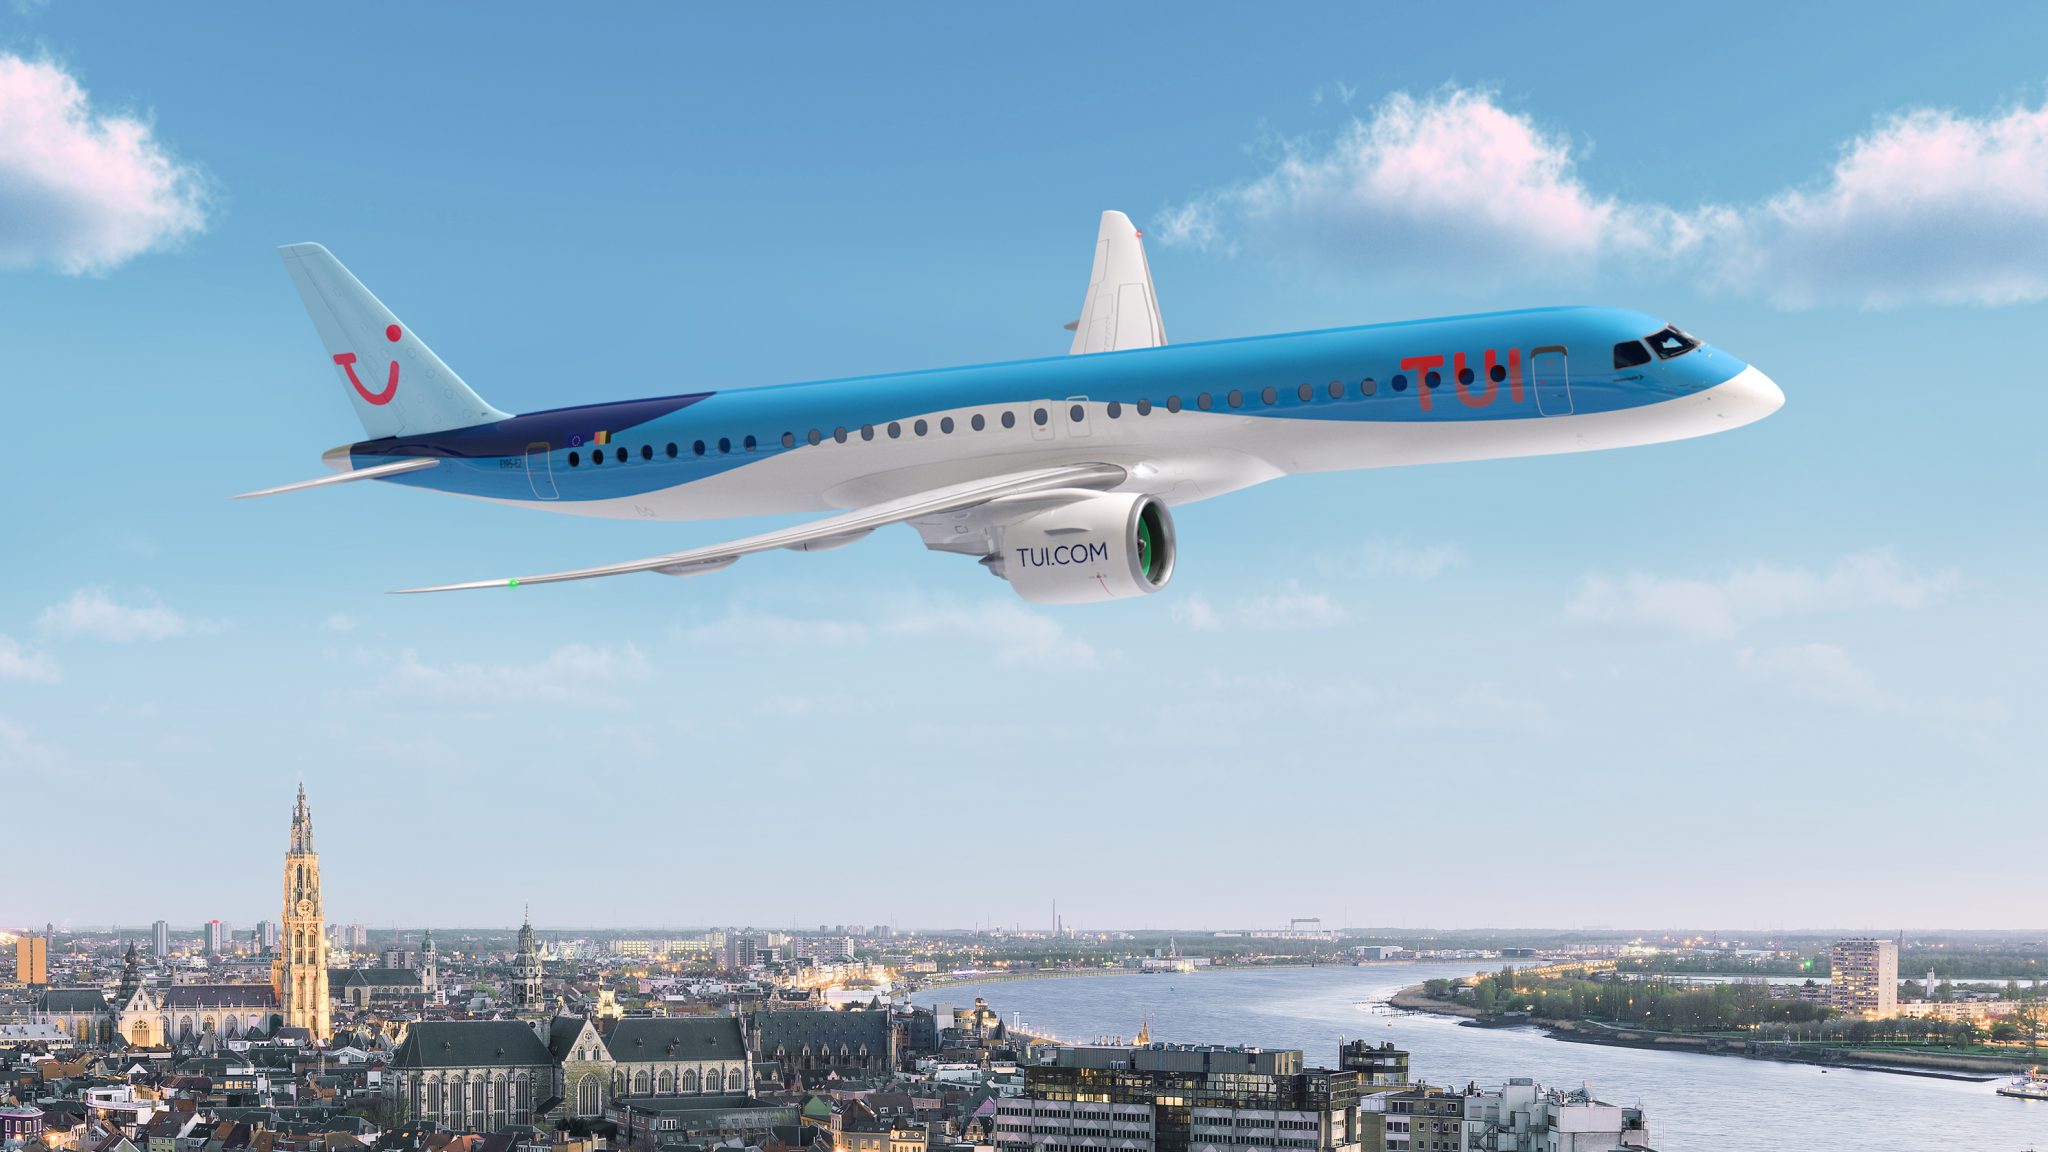 TUI fly Belgium предлагает три новых направления из Антверпена